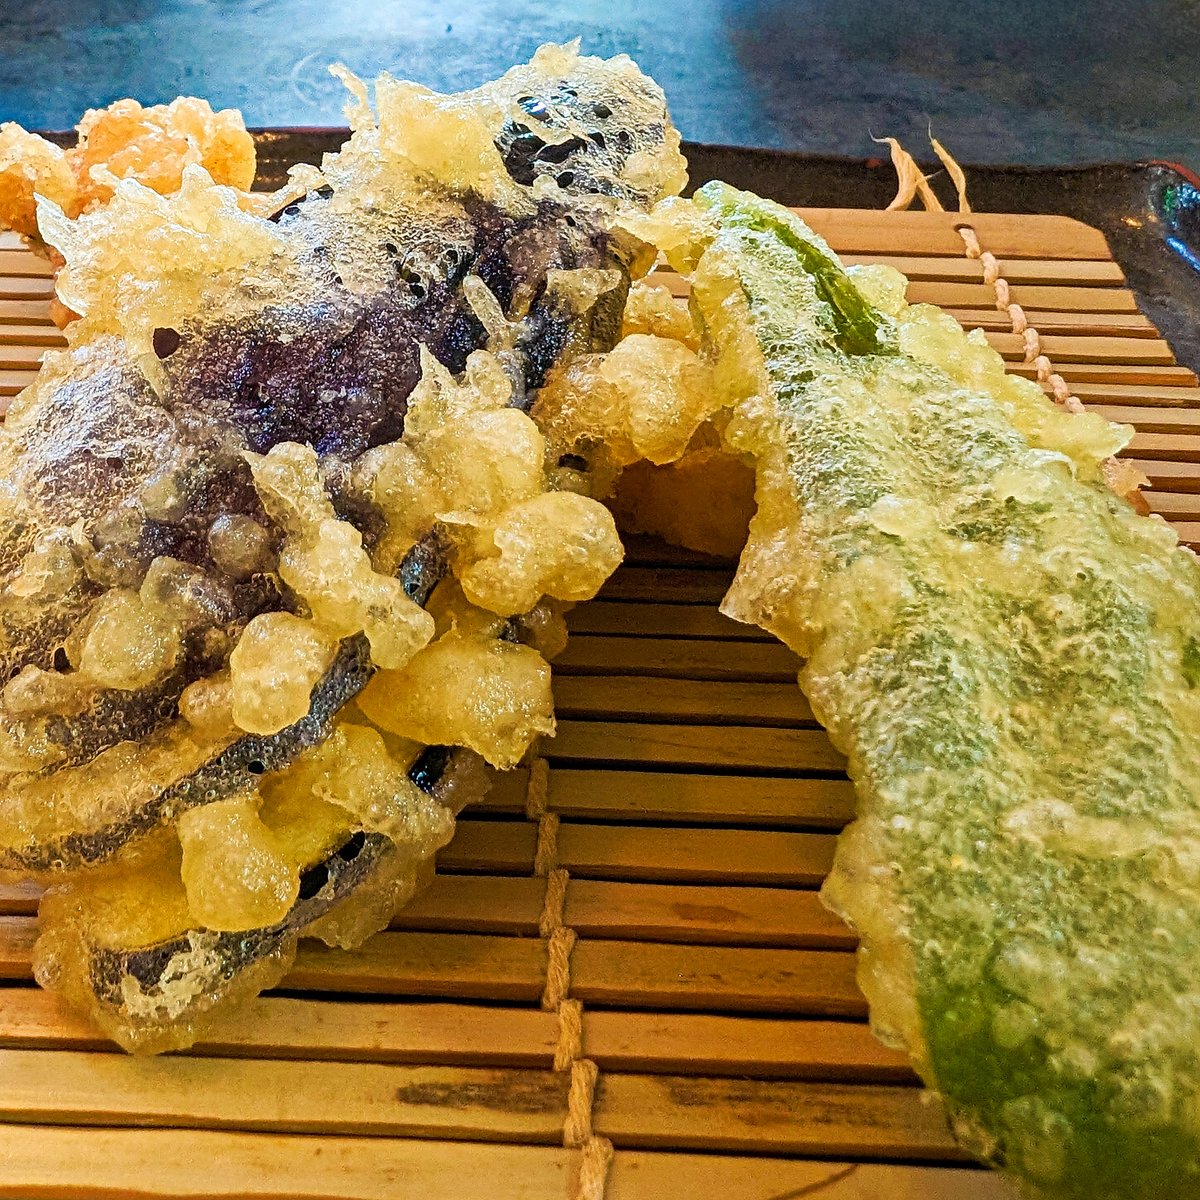 天ぷら～
ここのお店は食べるタイミングに合わせて
揚げたてをだしてくれる
浅漬け、キムチ、大根おろし、天ぷらのつゆ食べ放題
ごはん３杯までおかわり可
最後の玉ねぎのかき揚げの時は、別のたれが出され、かき揚げ丼で食べるよう勧められる、美味い！